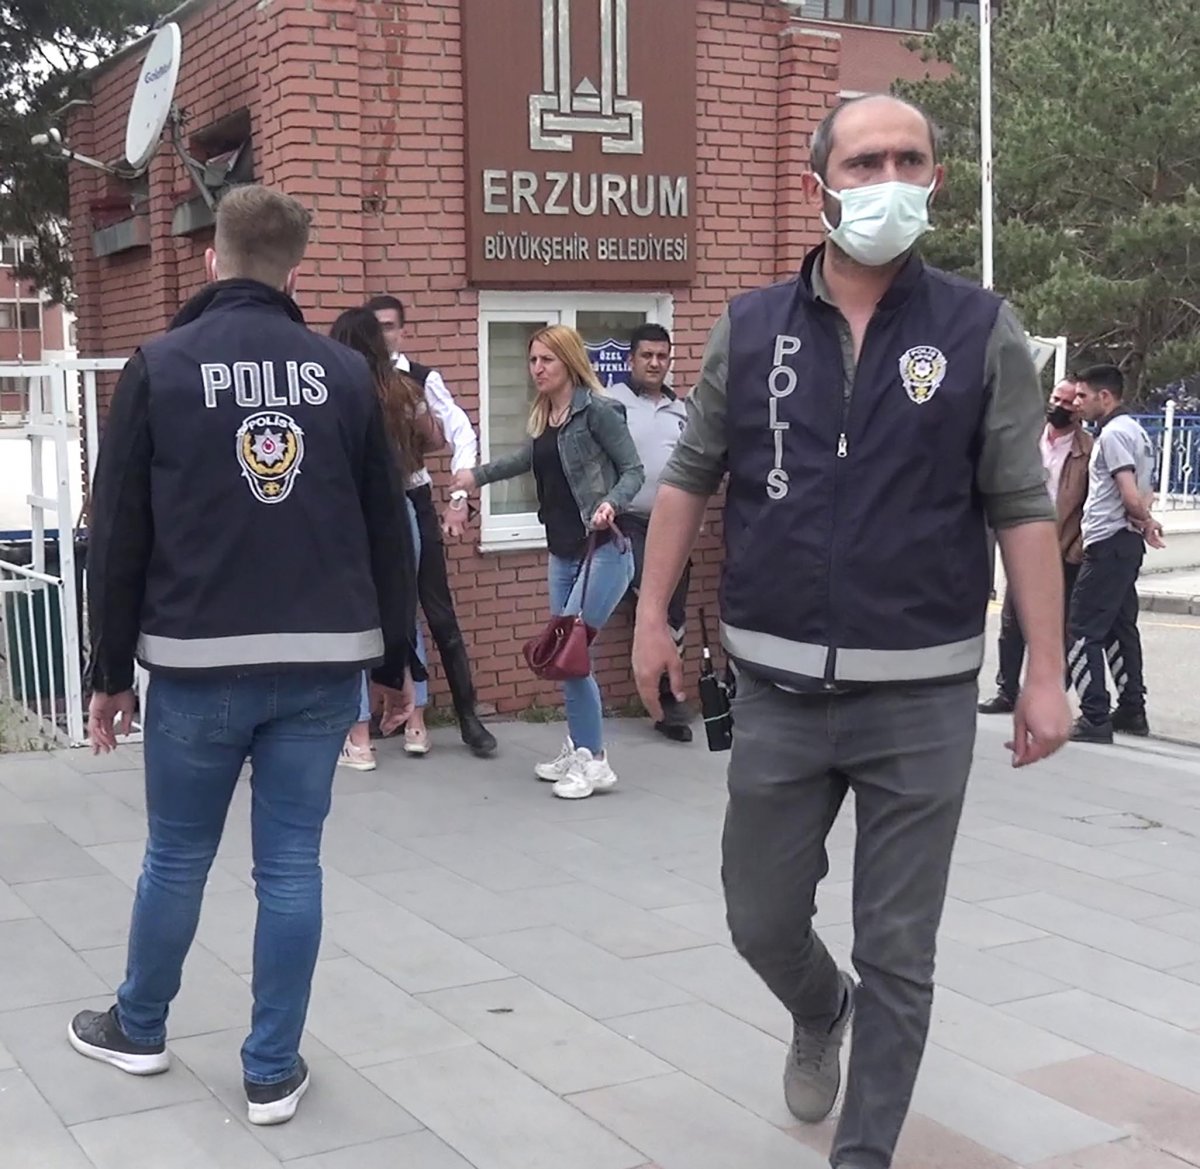 Erzurum da adliye binası önünde kavga #1